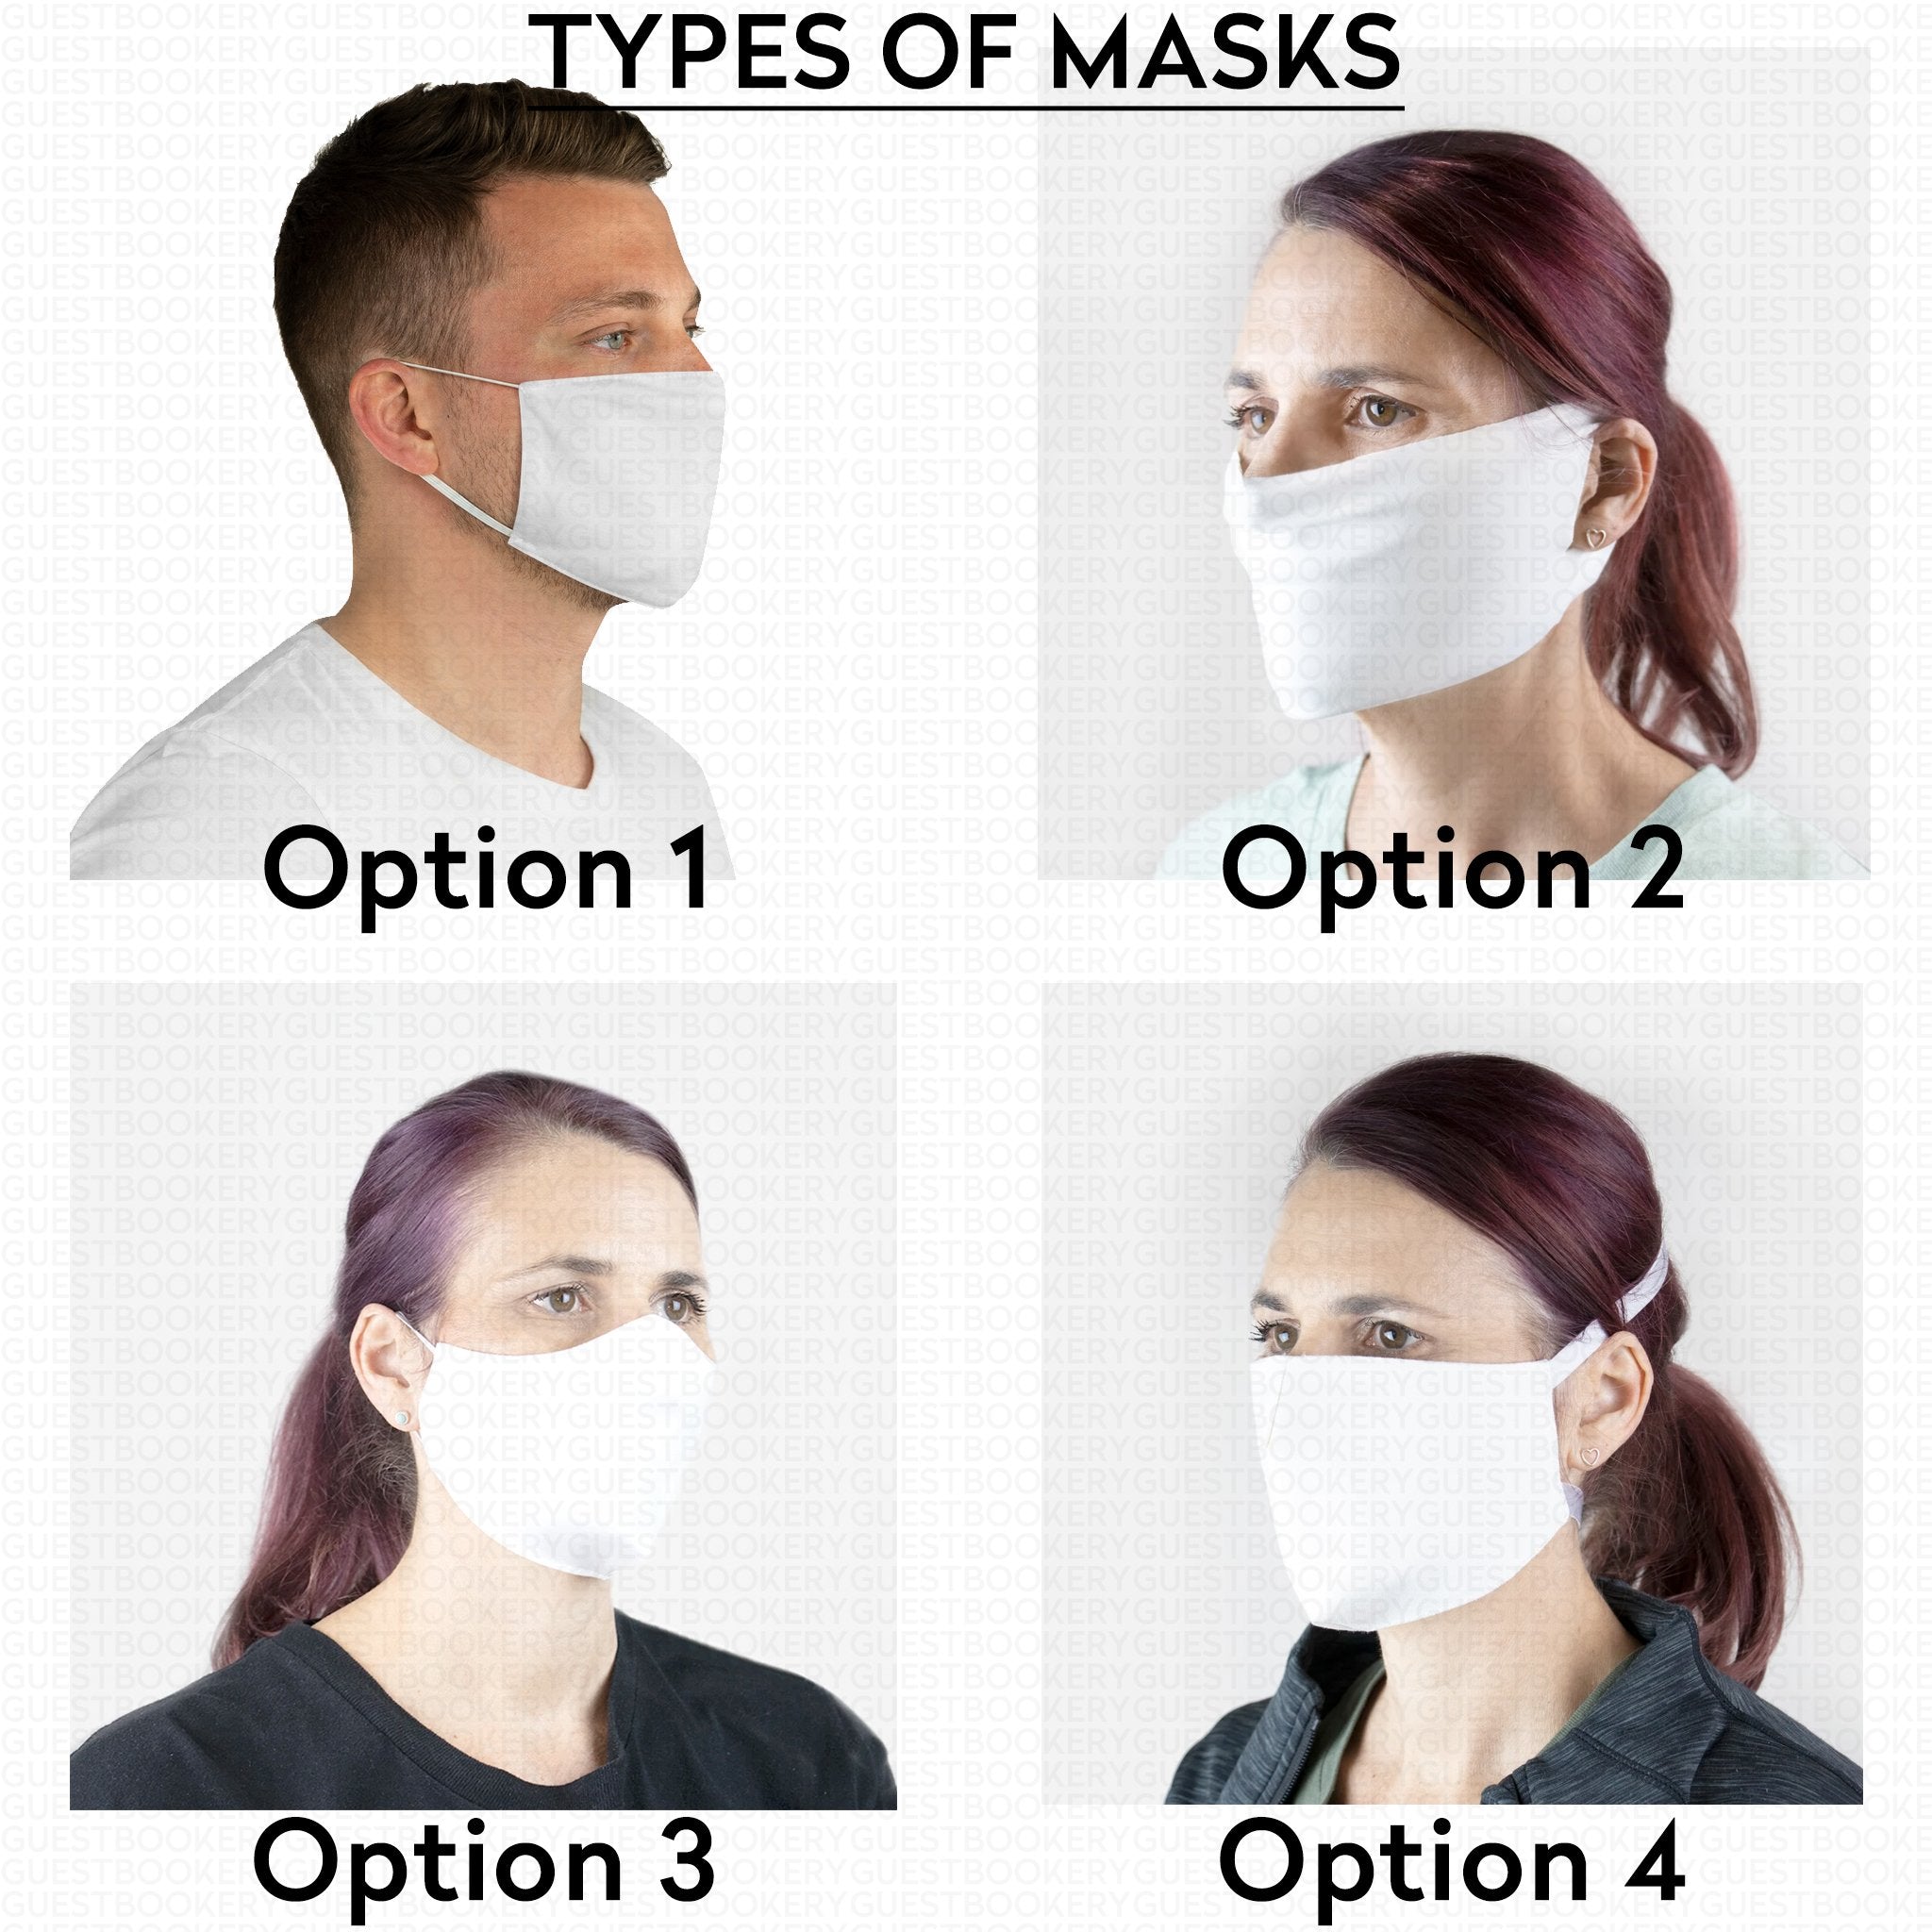 Custom masks